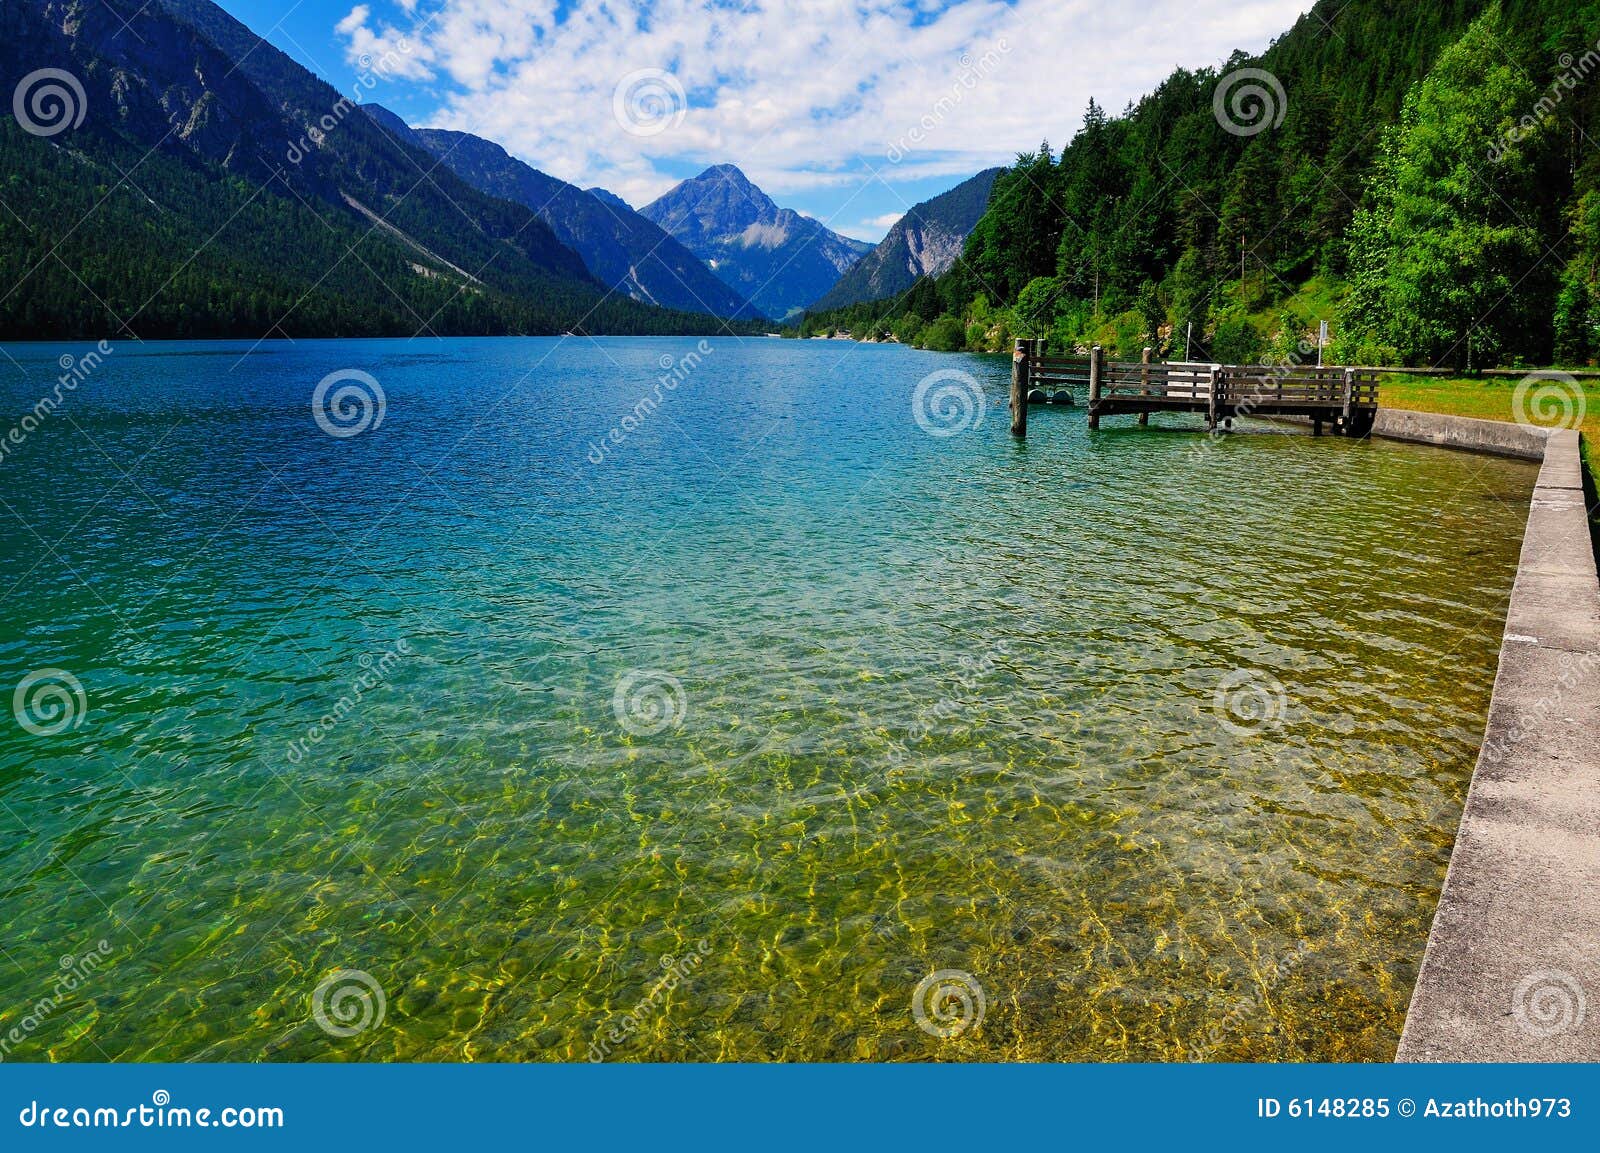 alpine lake in tirol 2